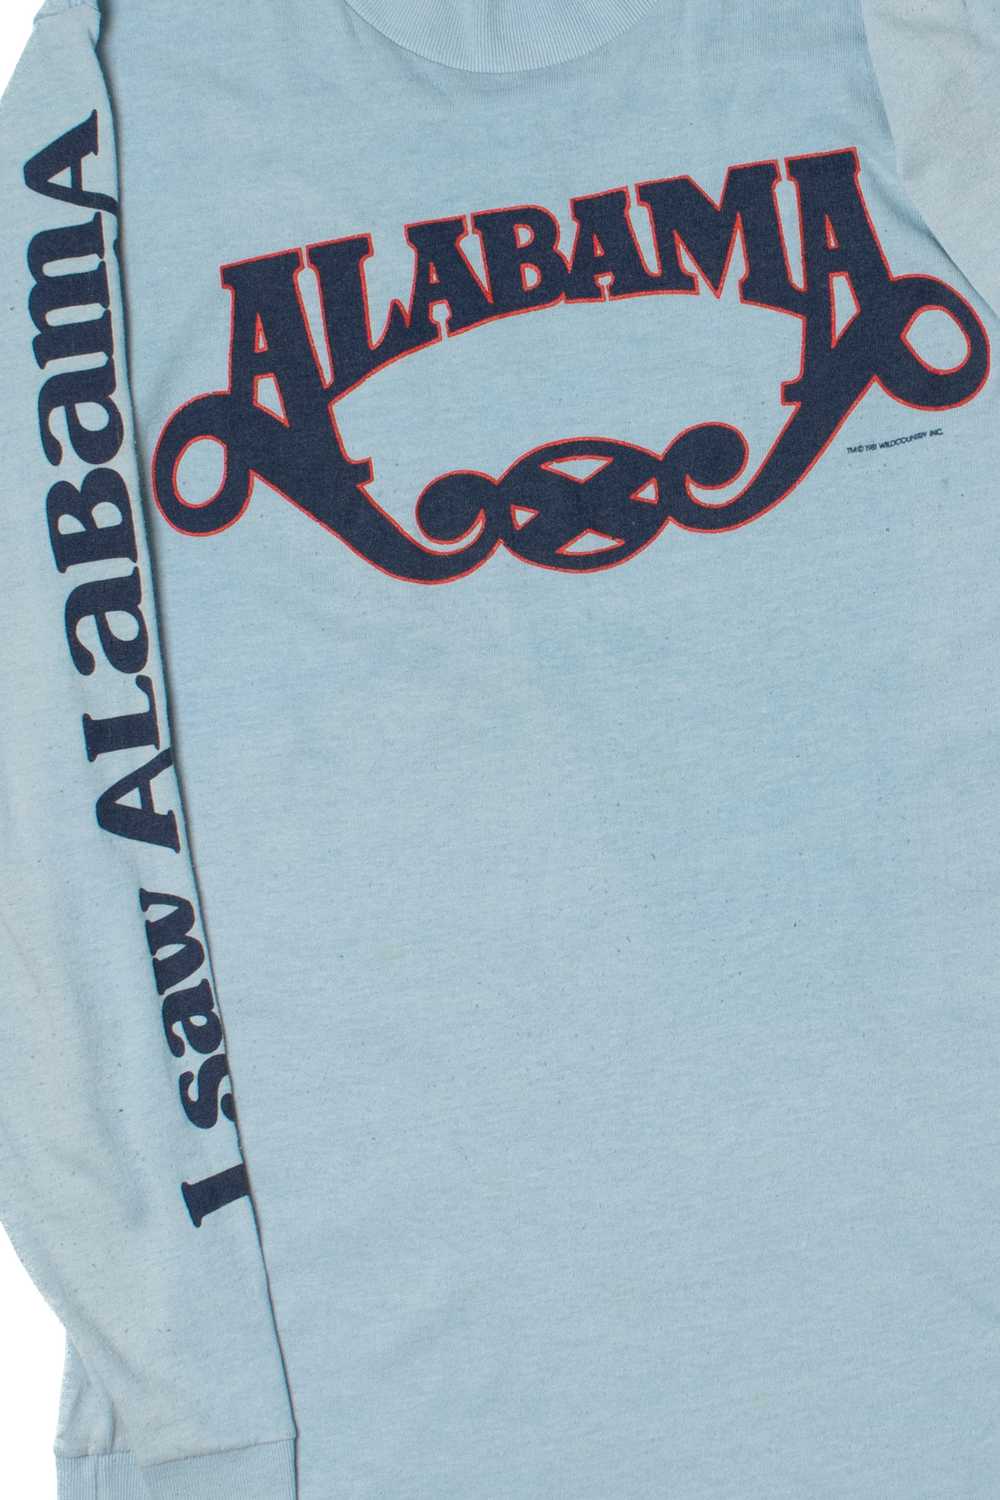 Vintage 1981 Alabama "I Saw Alabama" Long Sleeve … - image 2